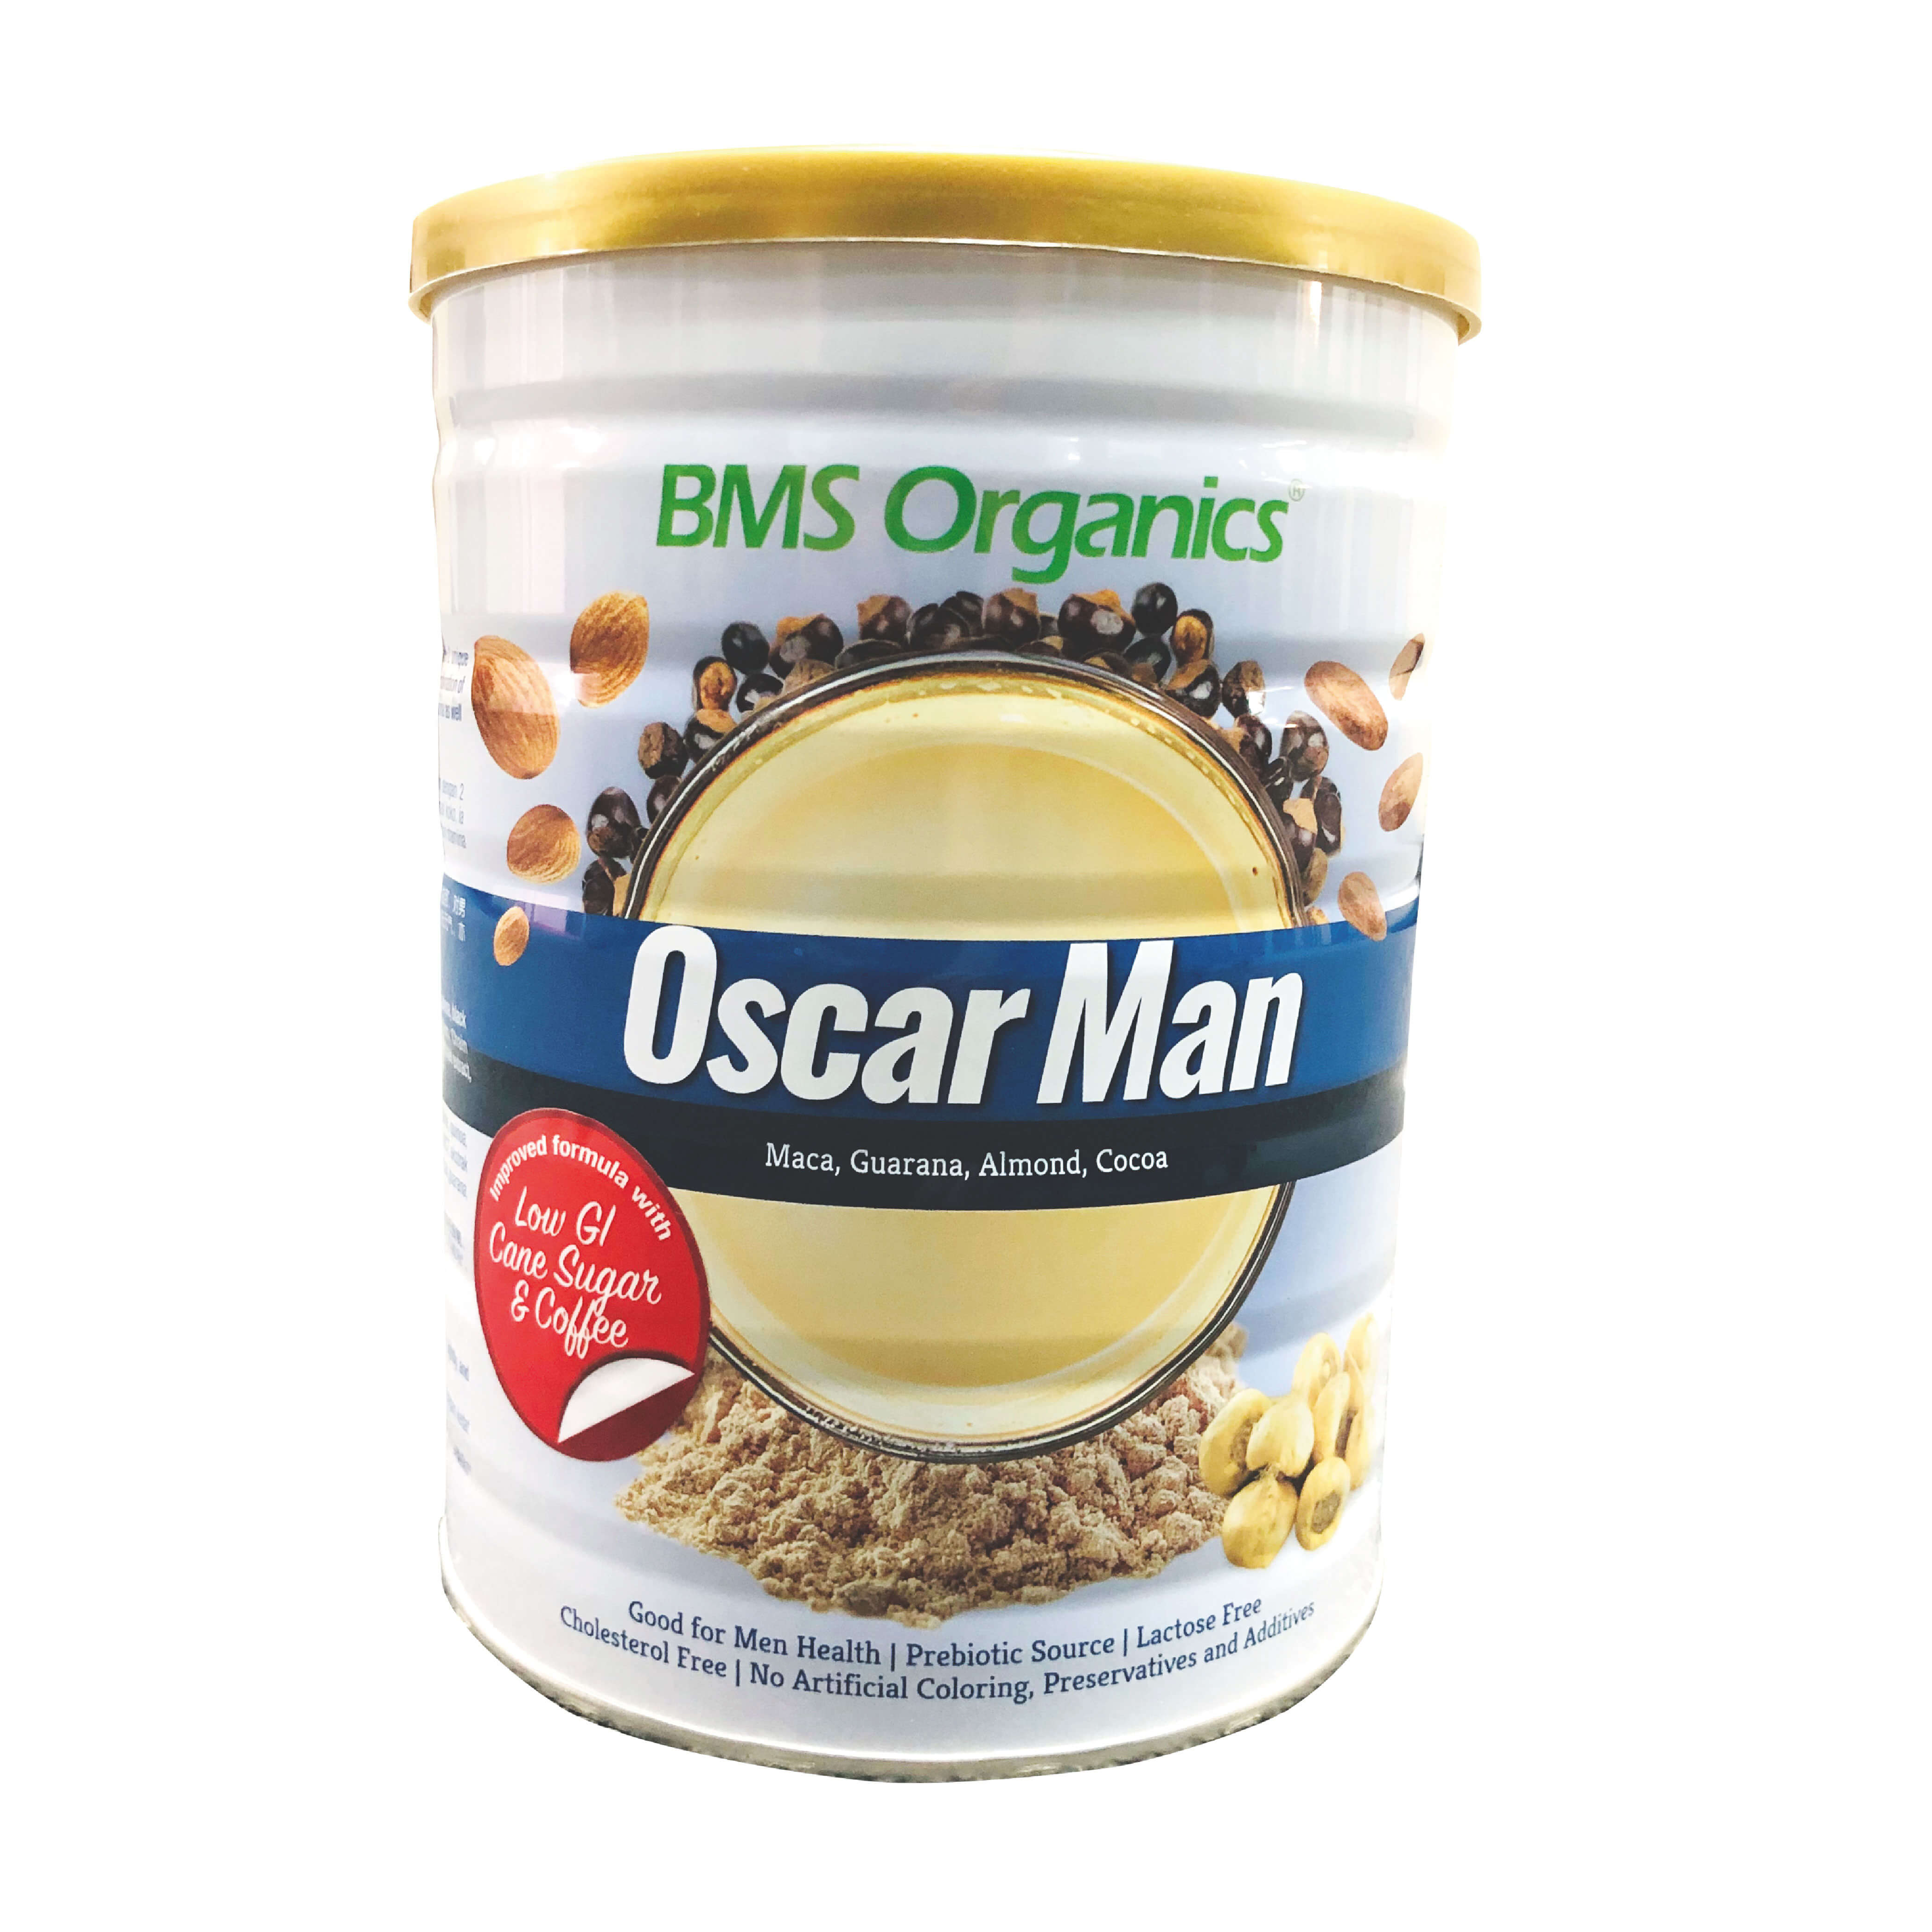 BMS Organics - Oscar Man Oatmilk  / 蔬事绅士燕麦奶 (800g)